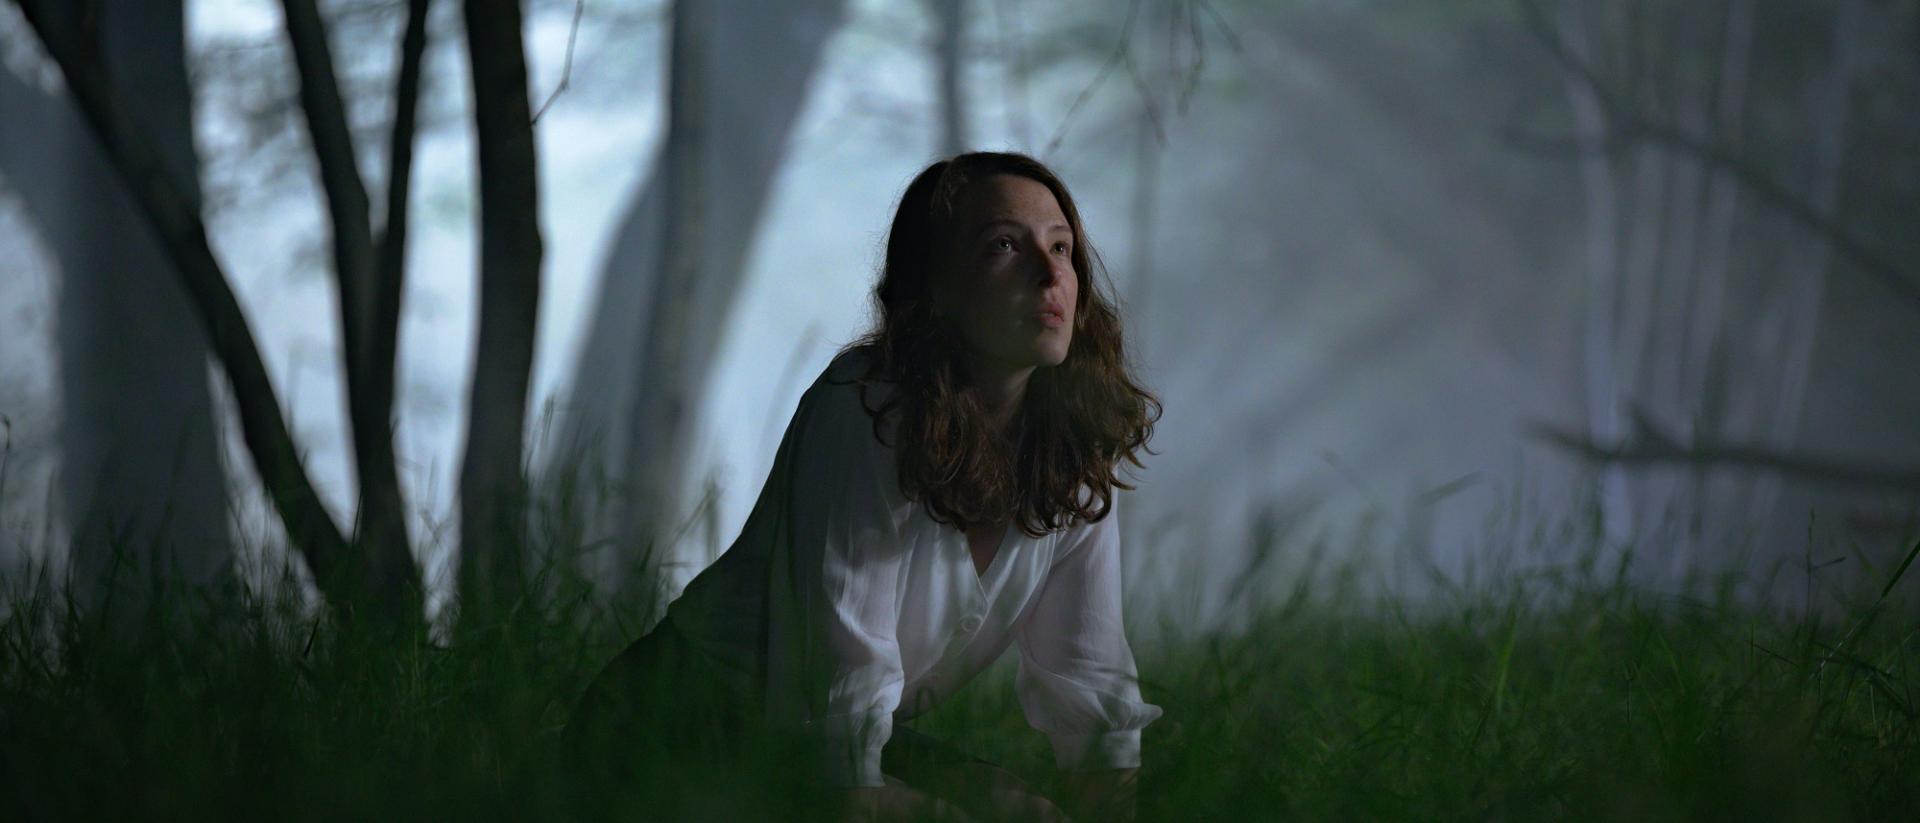 still from glwedd featuring annes elwy wearing a white shirt kneeling down in a dark forest